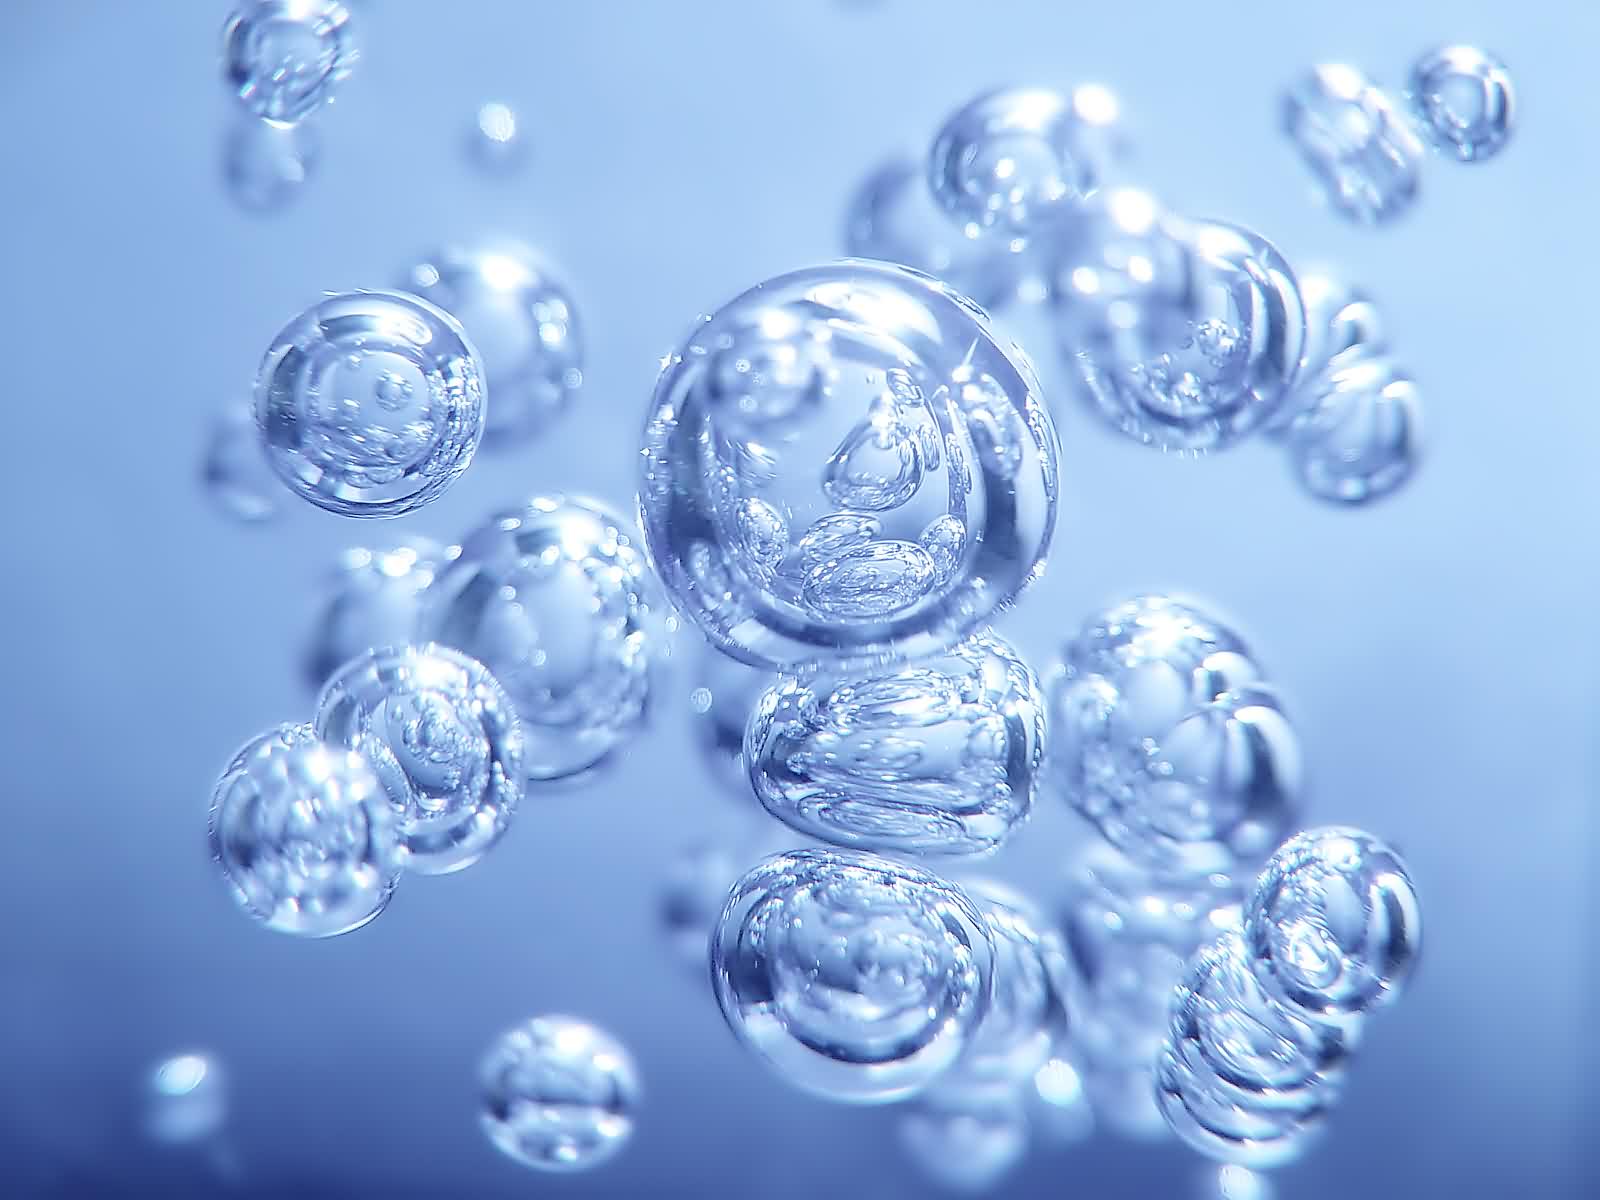 Top Bubbles 3d Desktop Images for Pinterest